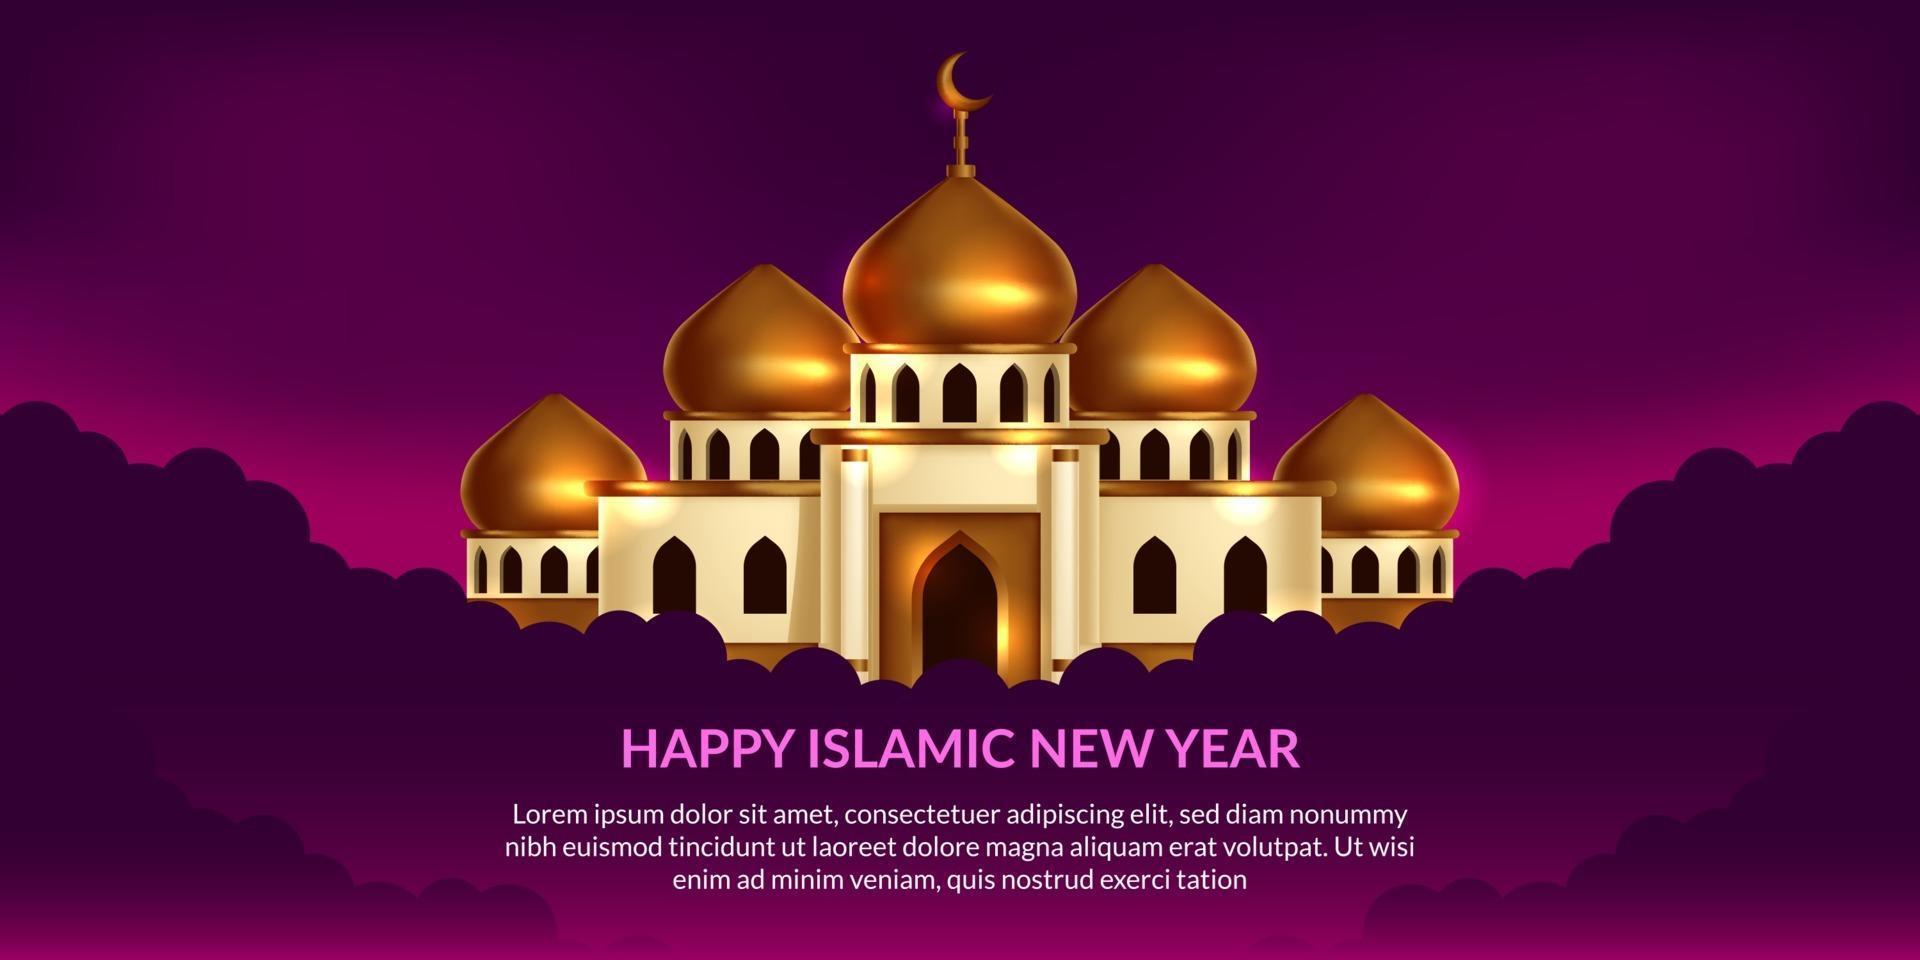 nouvel an islamique. heureux muharram. illustration de la mosquée dôme doré avec fond violet. vecteur